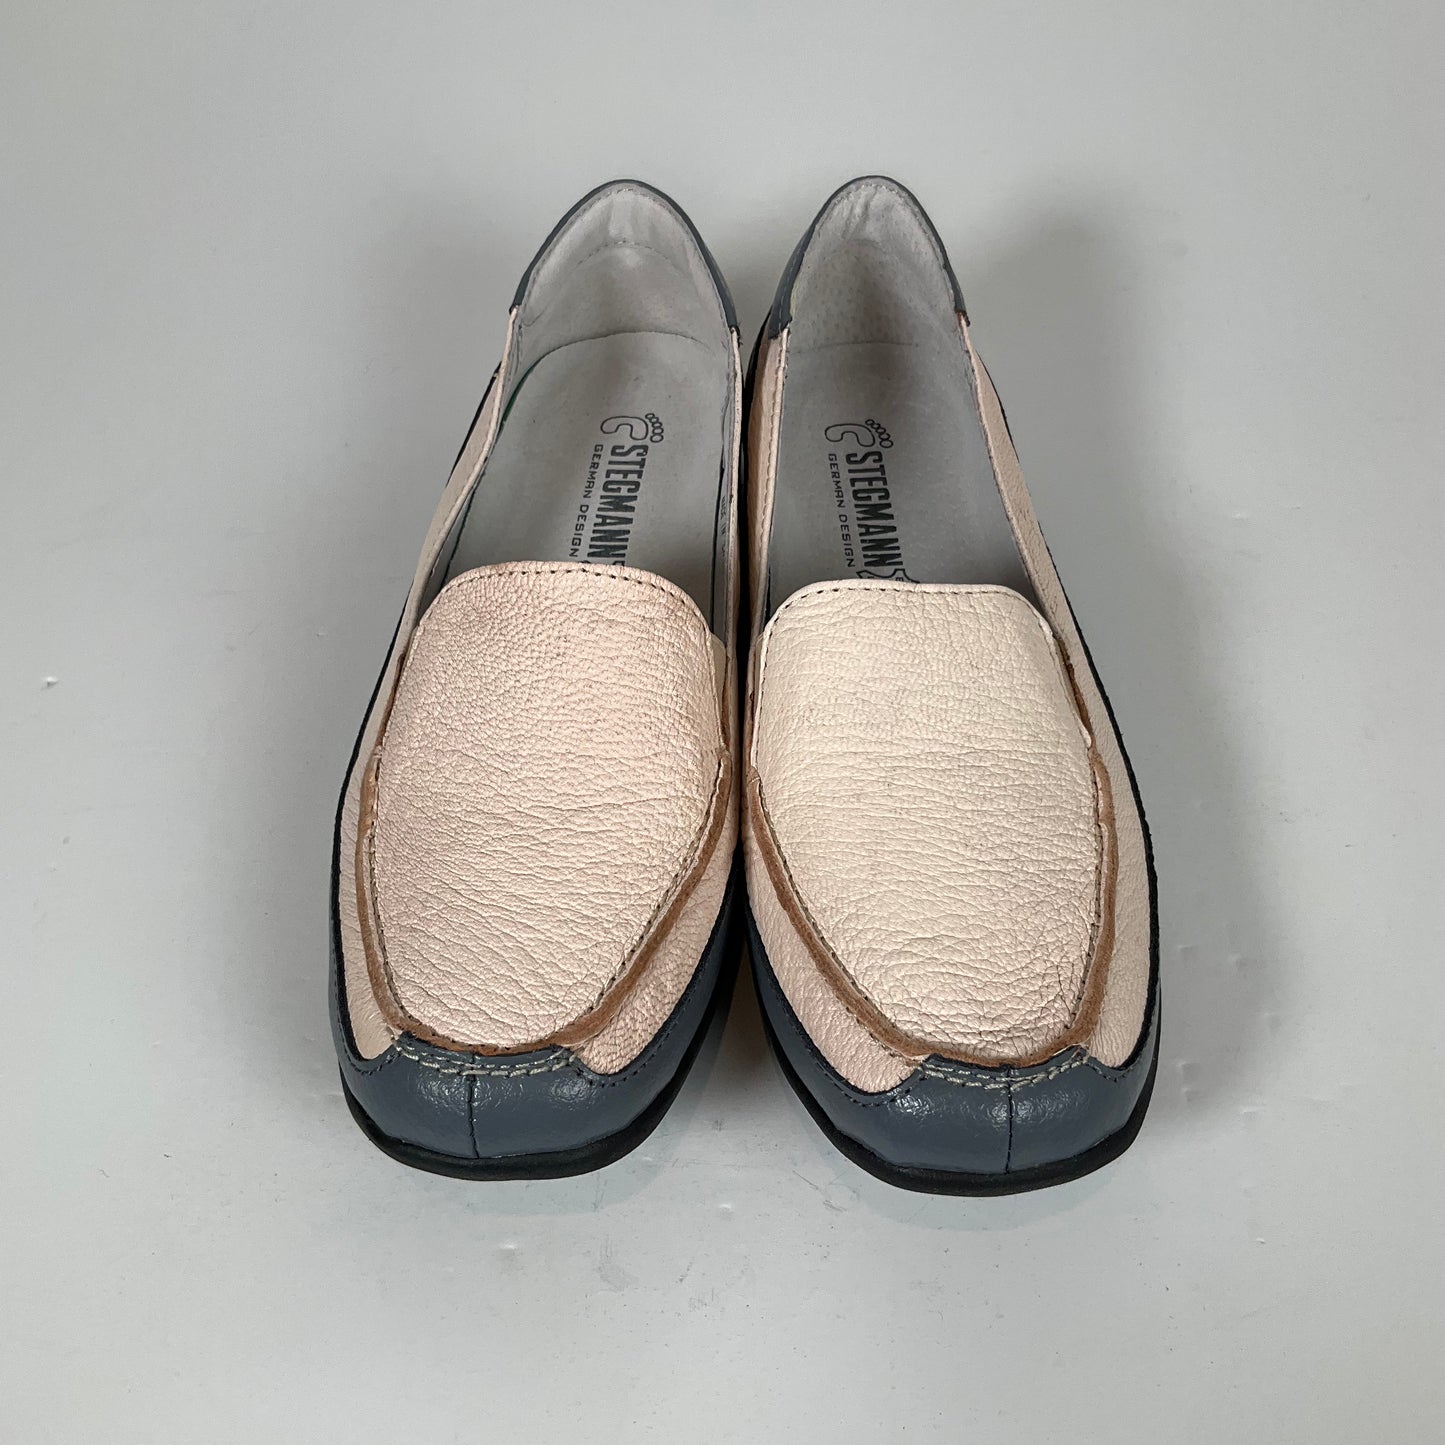 Stegmann - Shoes - Size 6